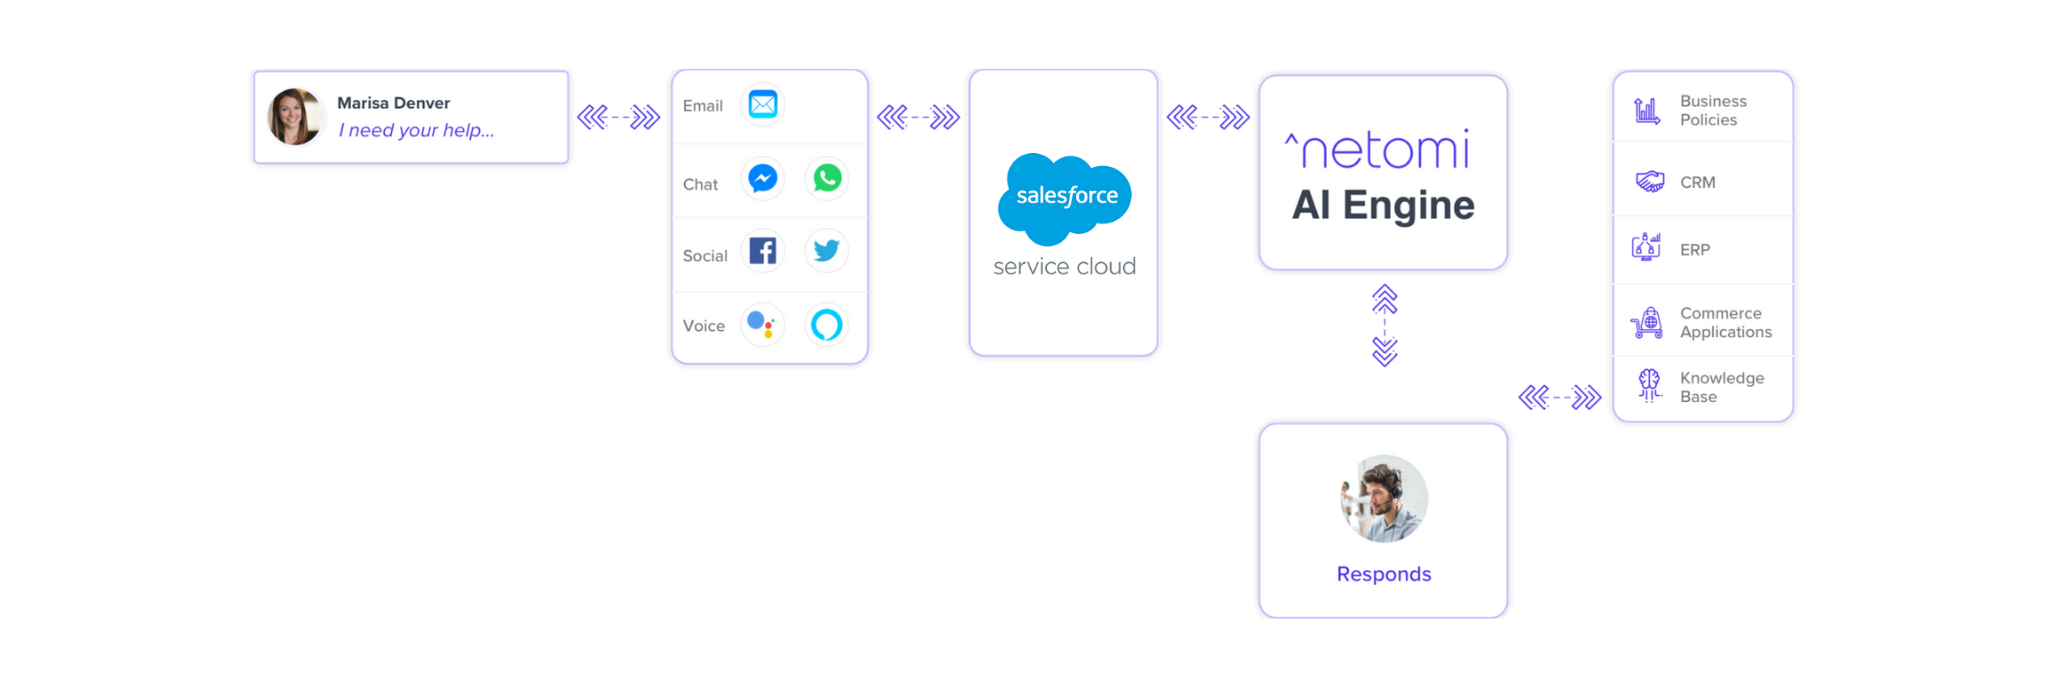 Salesforce chatbot - integration flowchart for our conversational AI